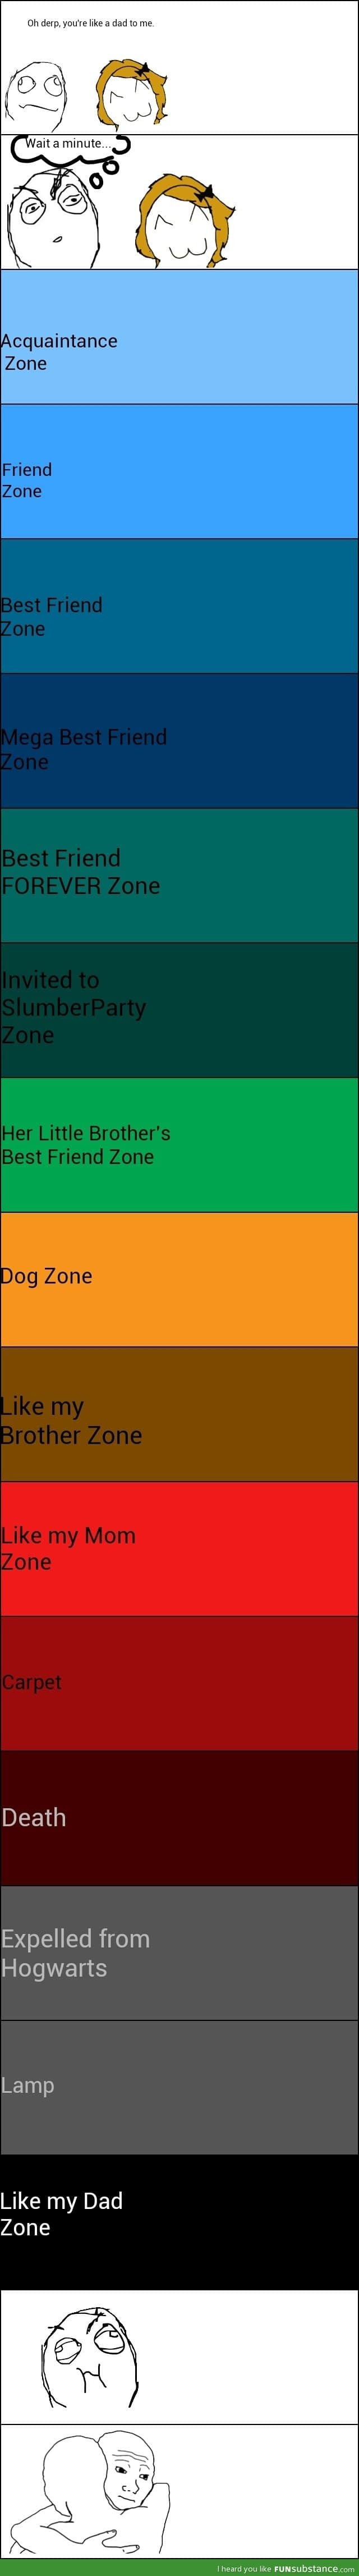 Friendzone levels guide